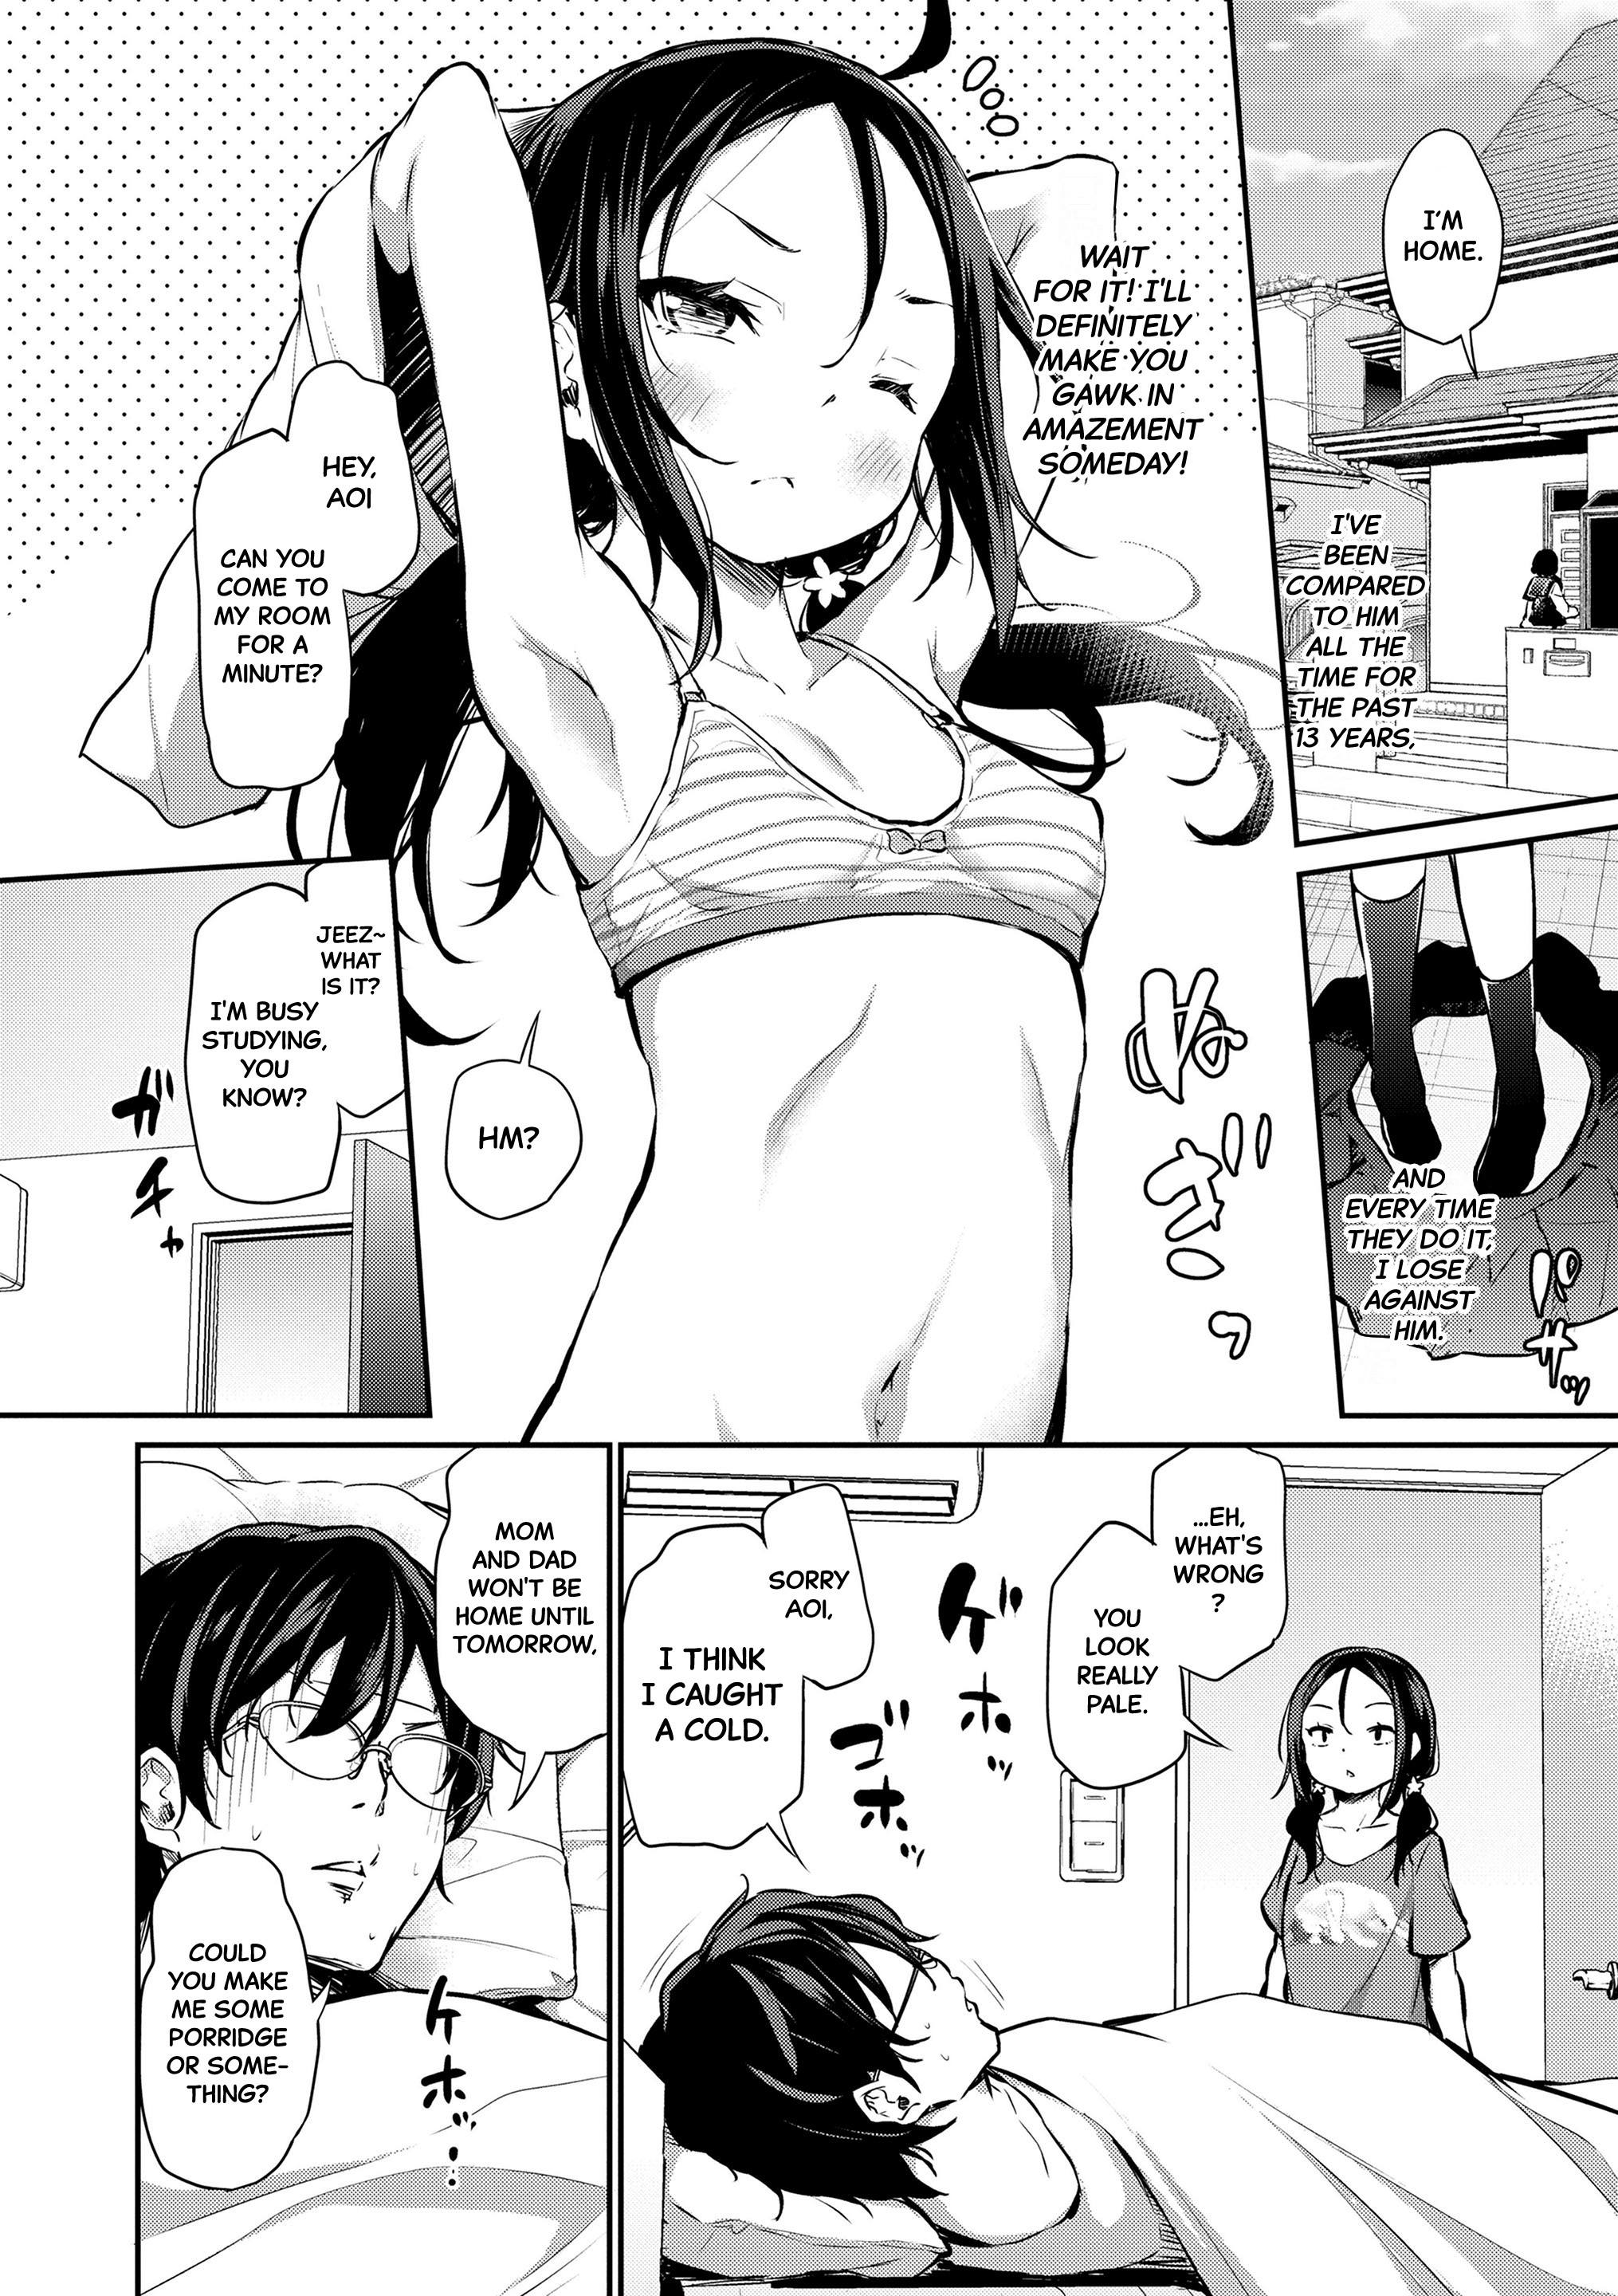 Sister hentai manga